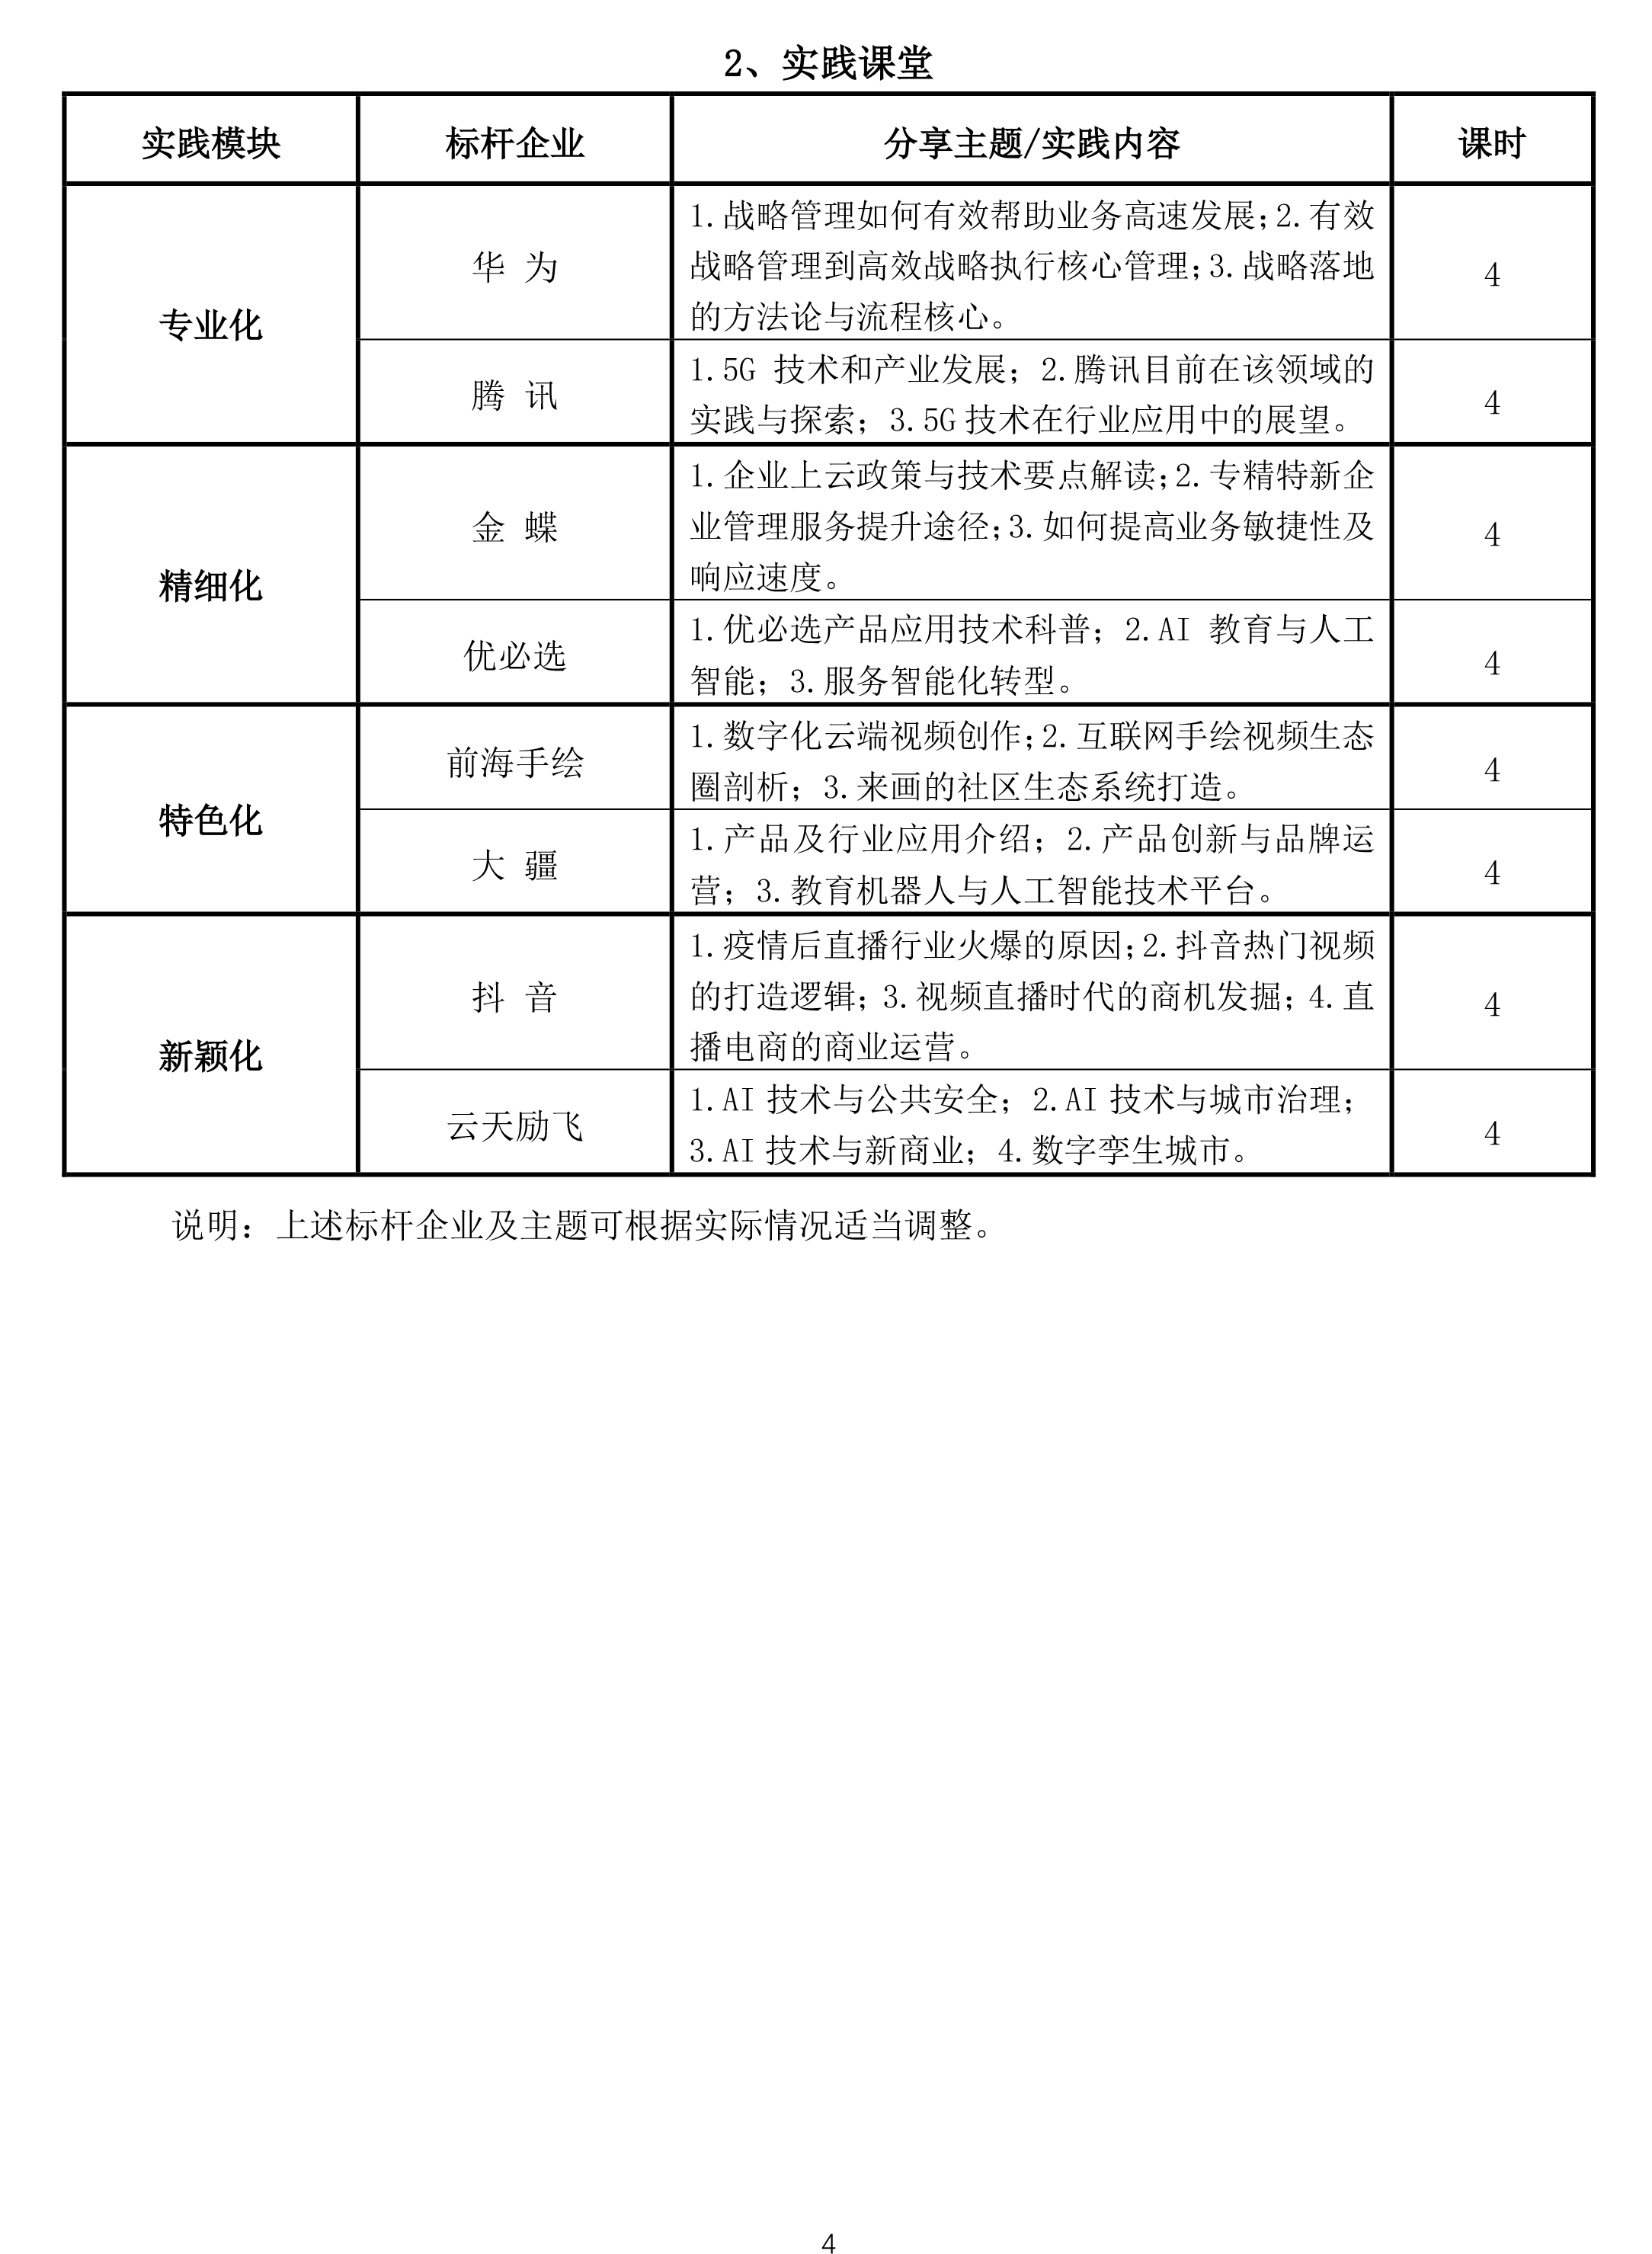 【北大】深圳市民营及中小企业专精特新高级研修班（第1期）简章20210120(1)-4.png